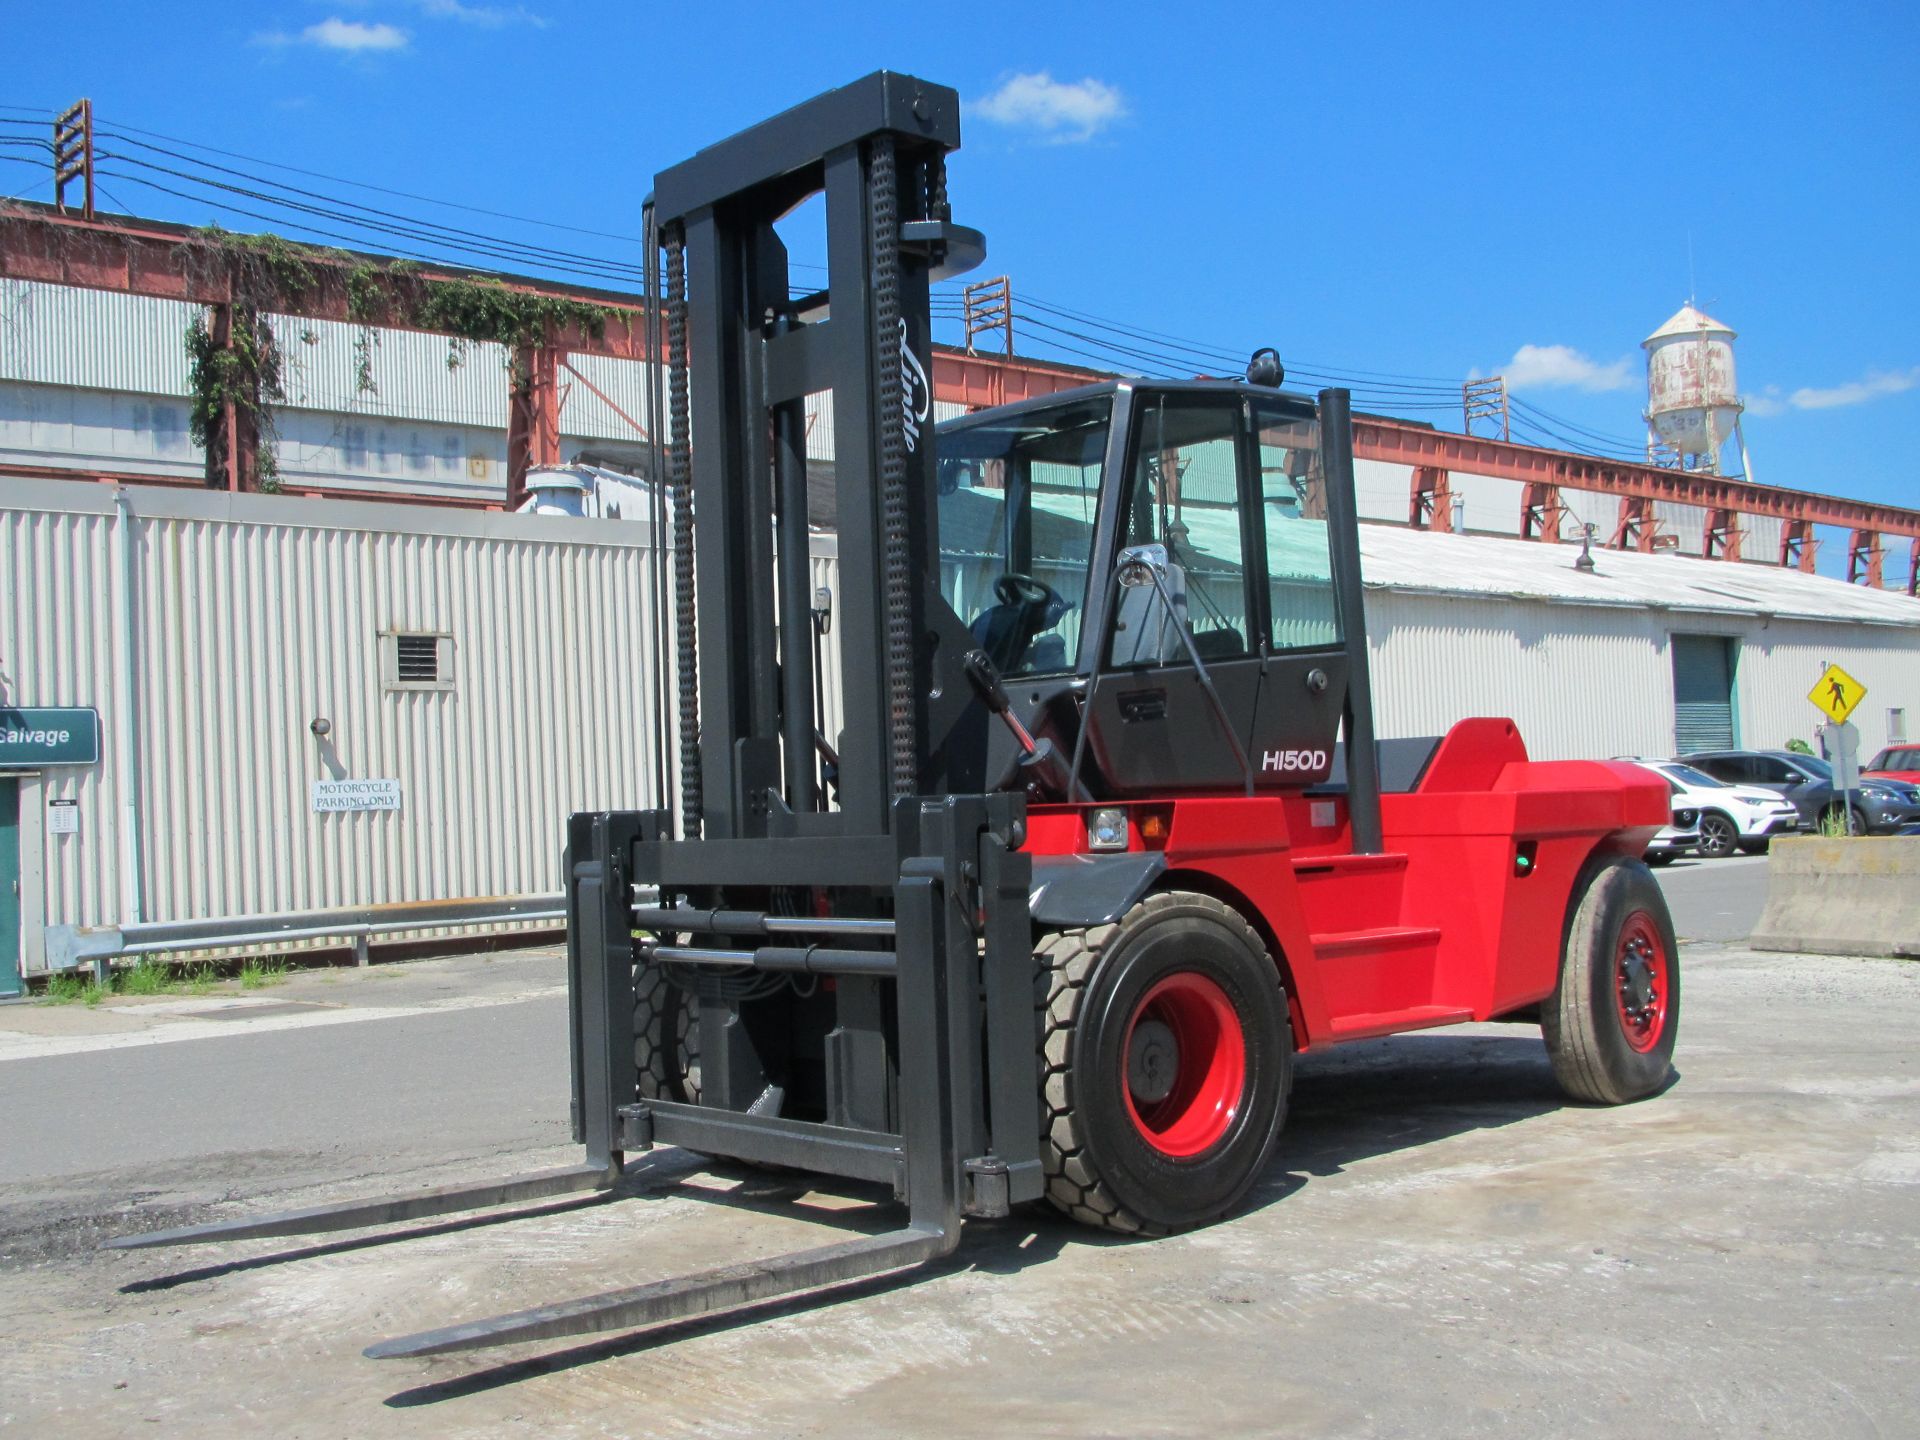 Linde H150D 30,000lb Forklift - Image 4 of 12